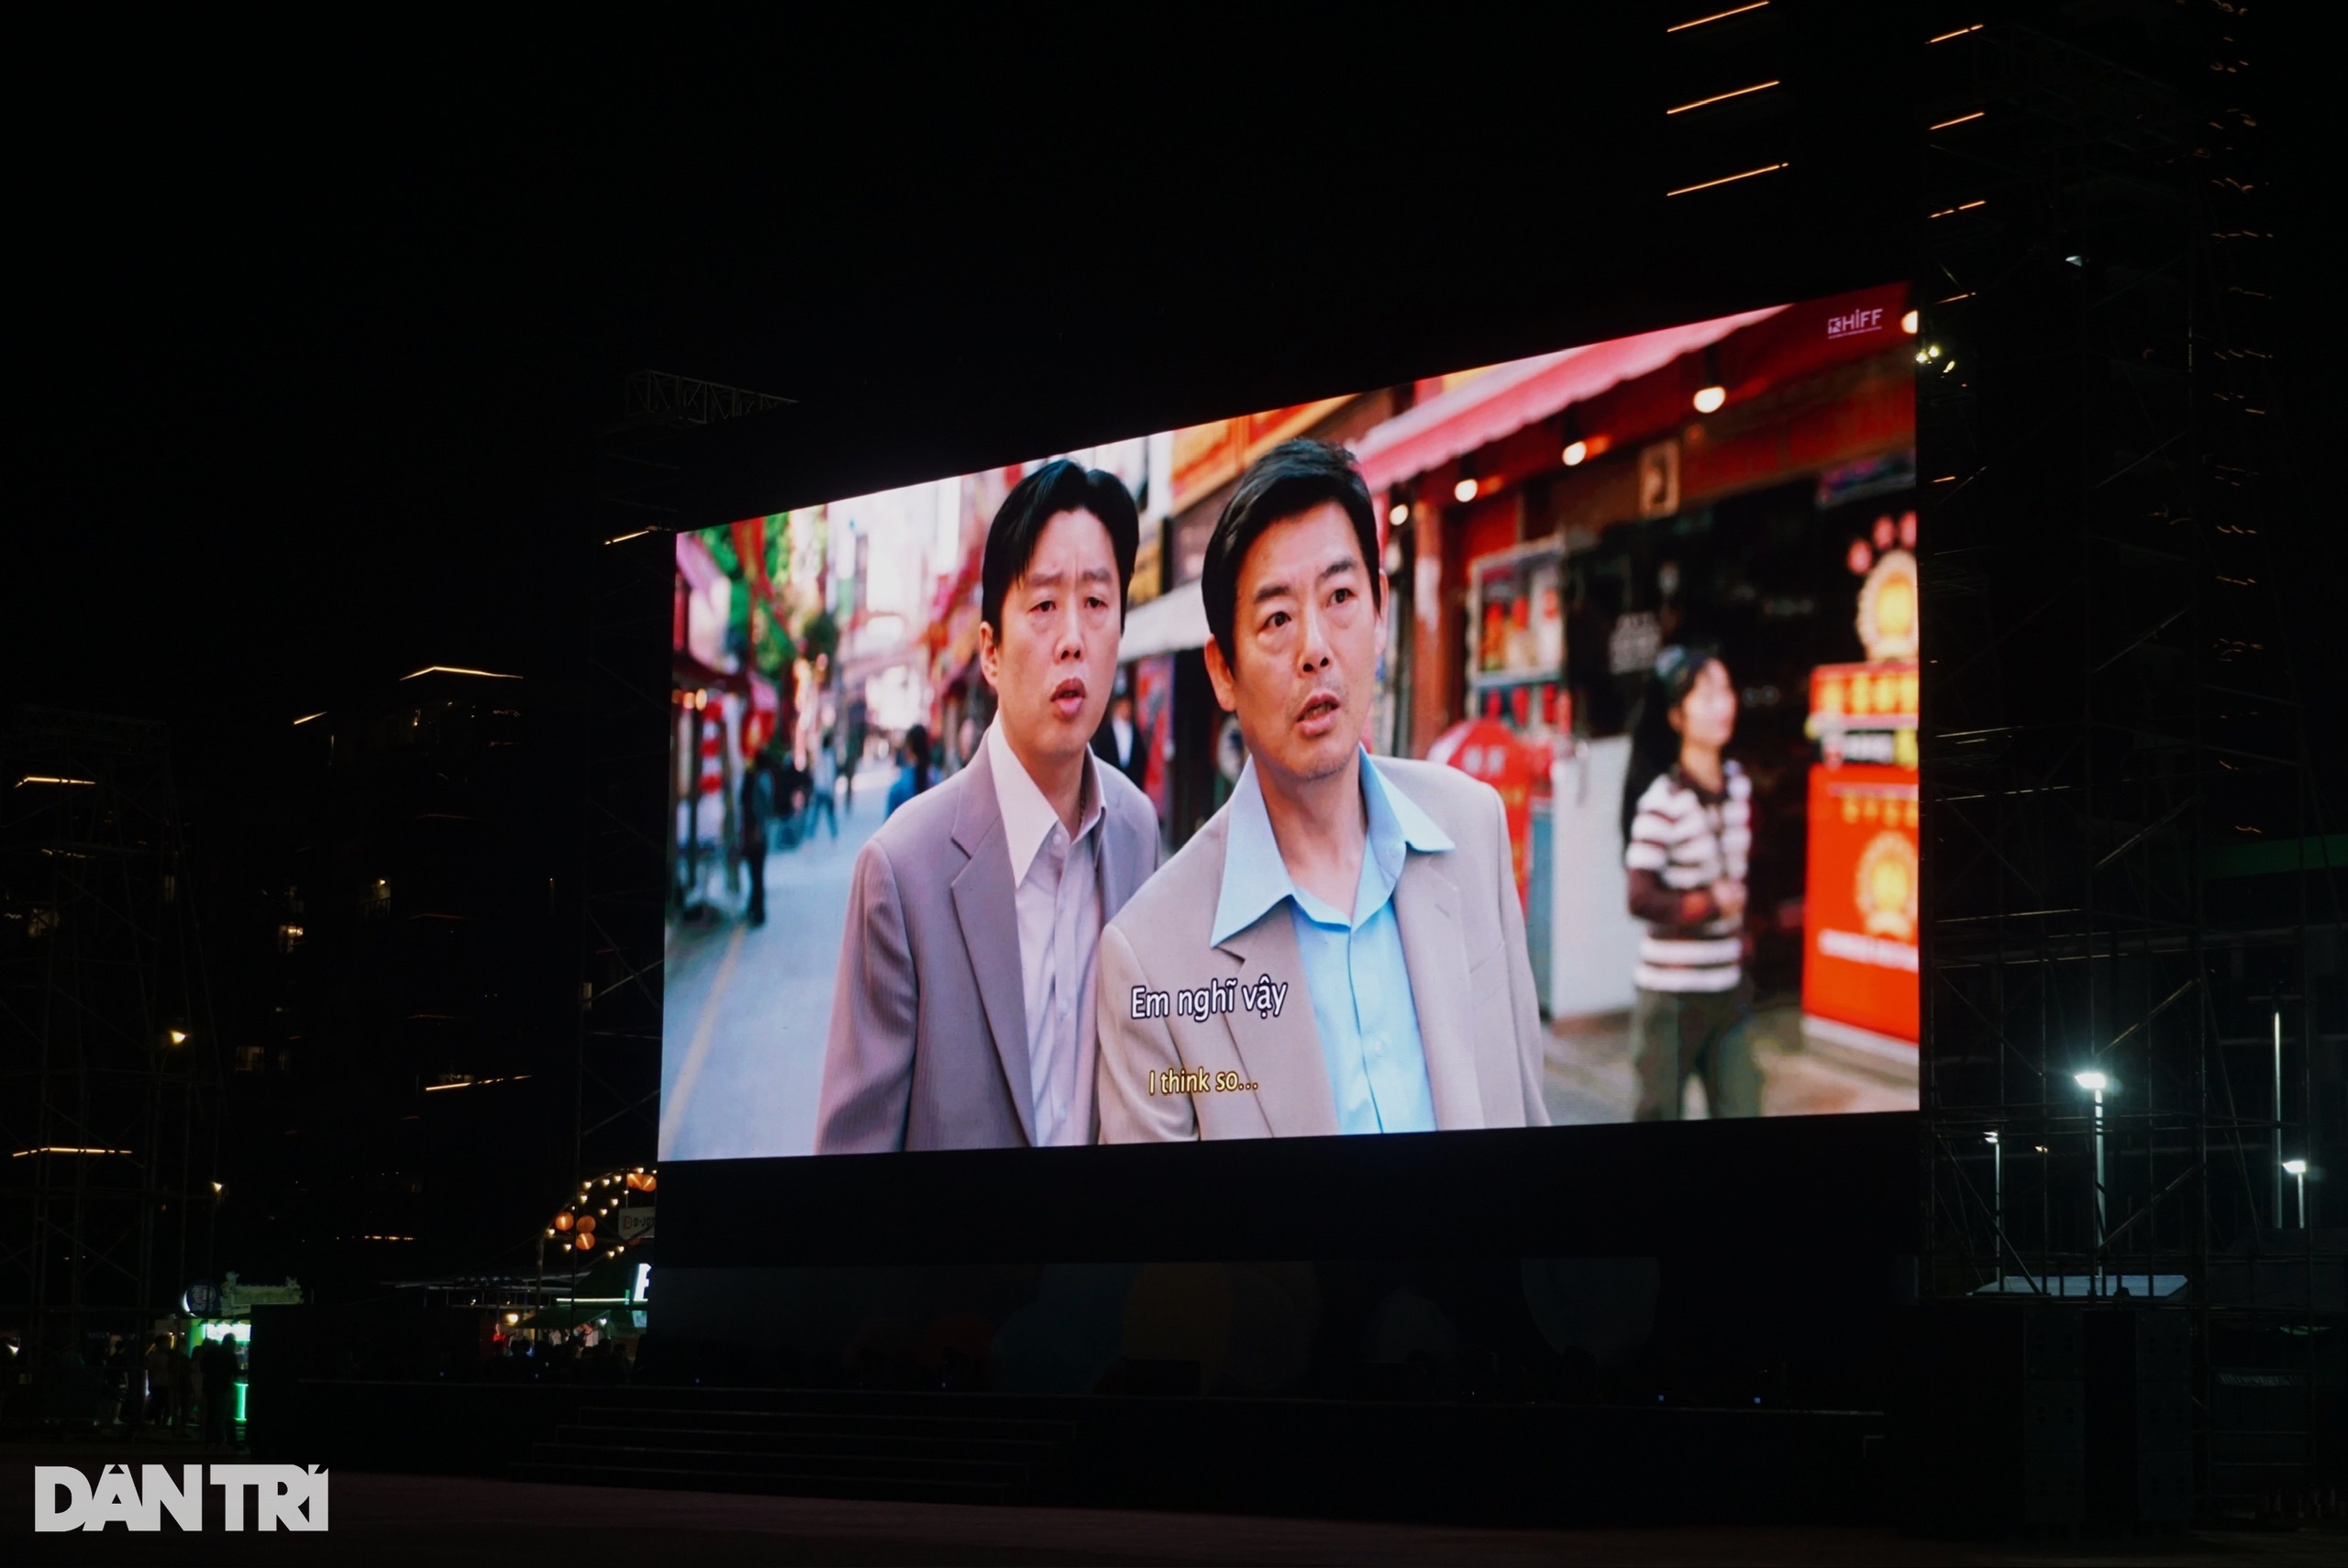 Màn hình lớn, sắc nét được bố trí để chiếu phim tại Công viên Điện ảnh (Ảnh: Mộc Khải).